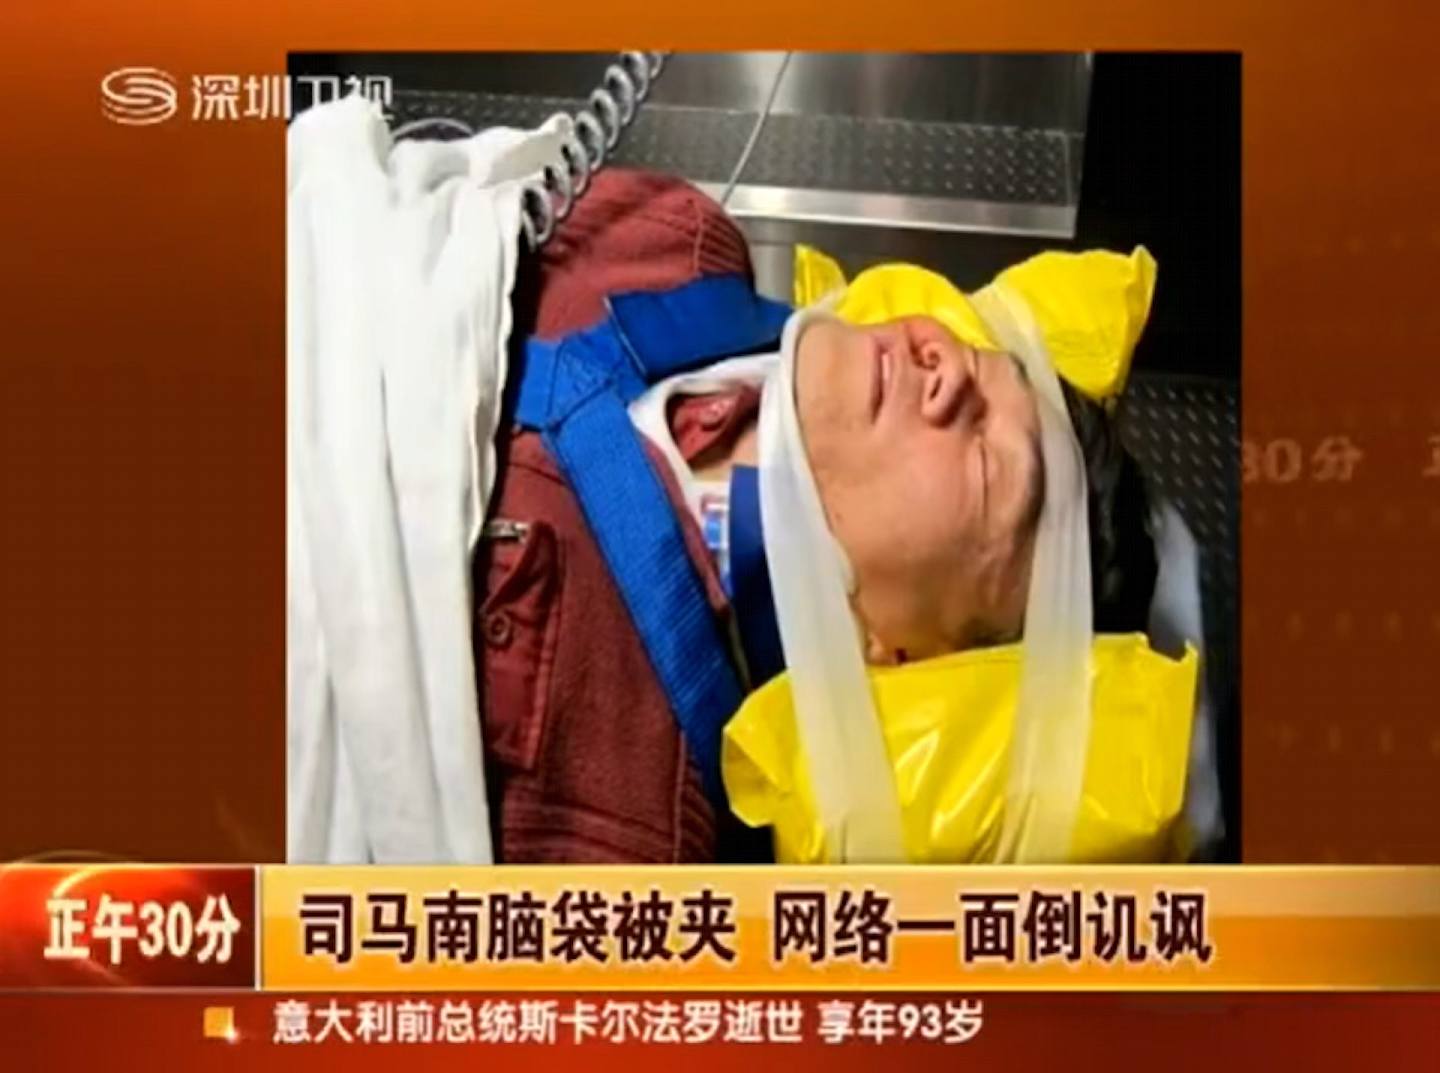 深圳卫视当年报导了司马南脑袋被夹的新闻。 （视频截图）